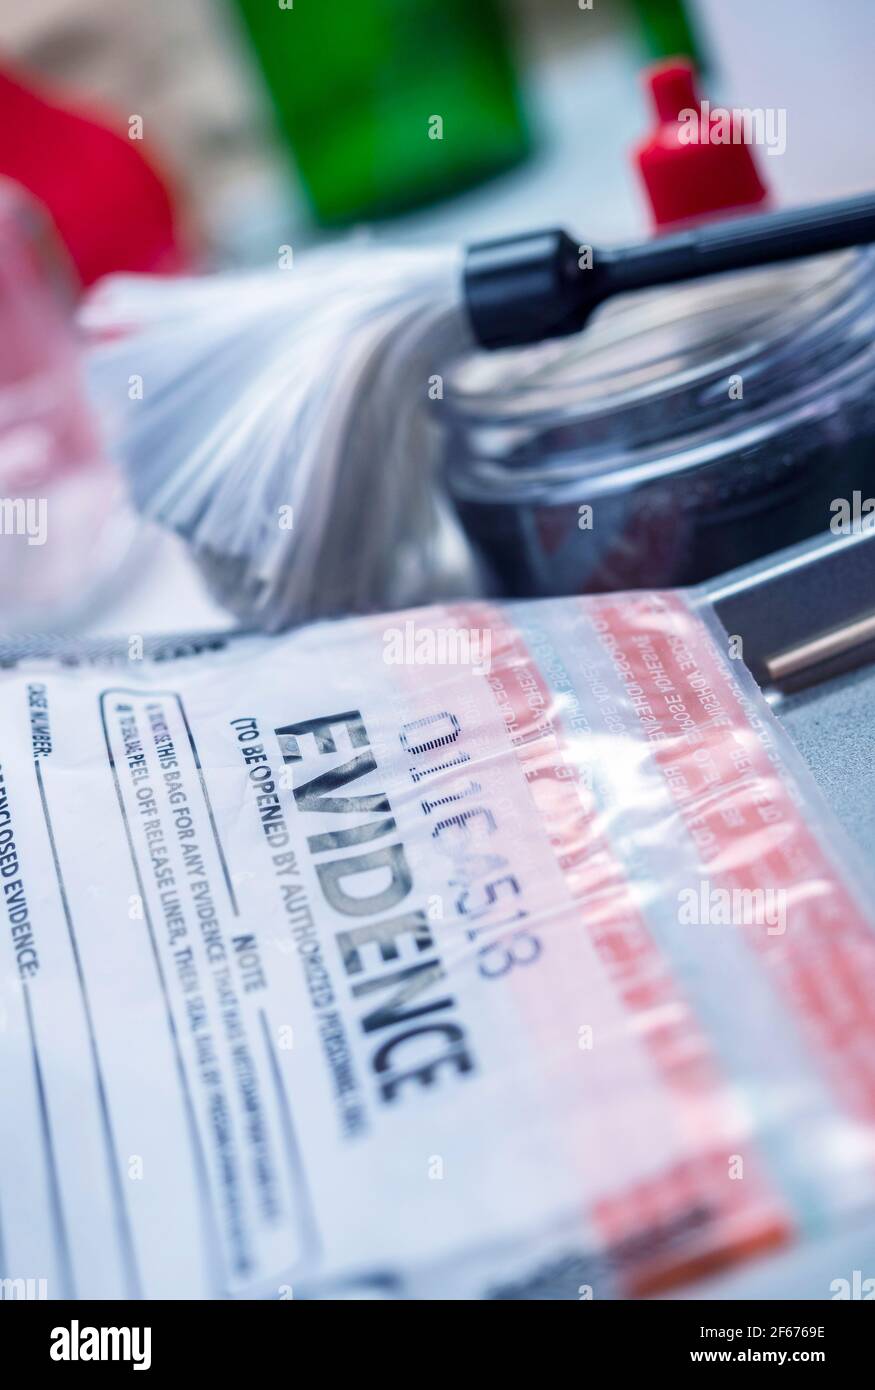 Strumenti di ricerca di base con un sacchetto di prova in laboratorio attrezzature forensi, immagine concettuale Foto Stock